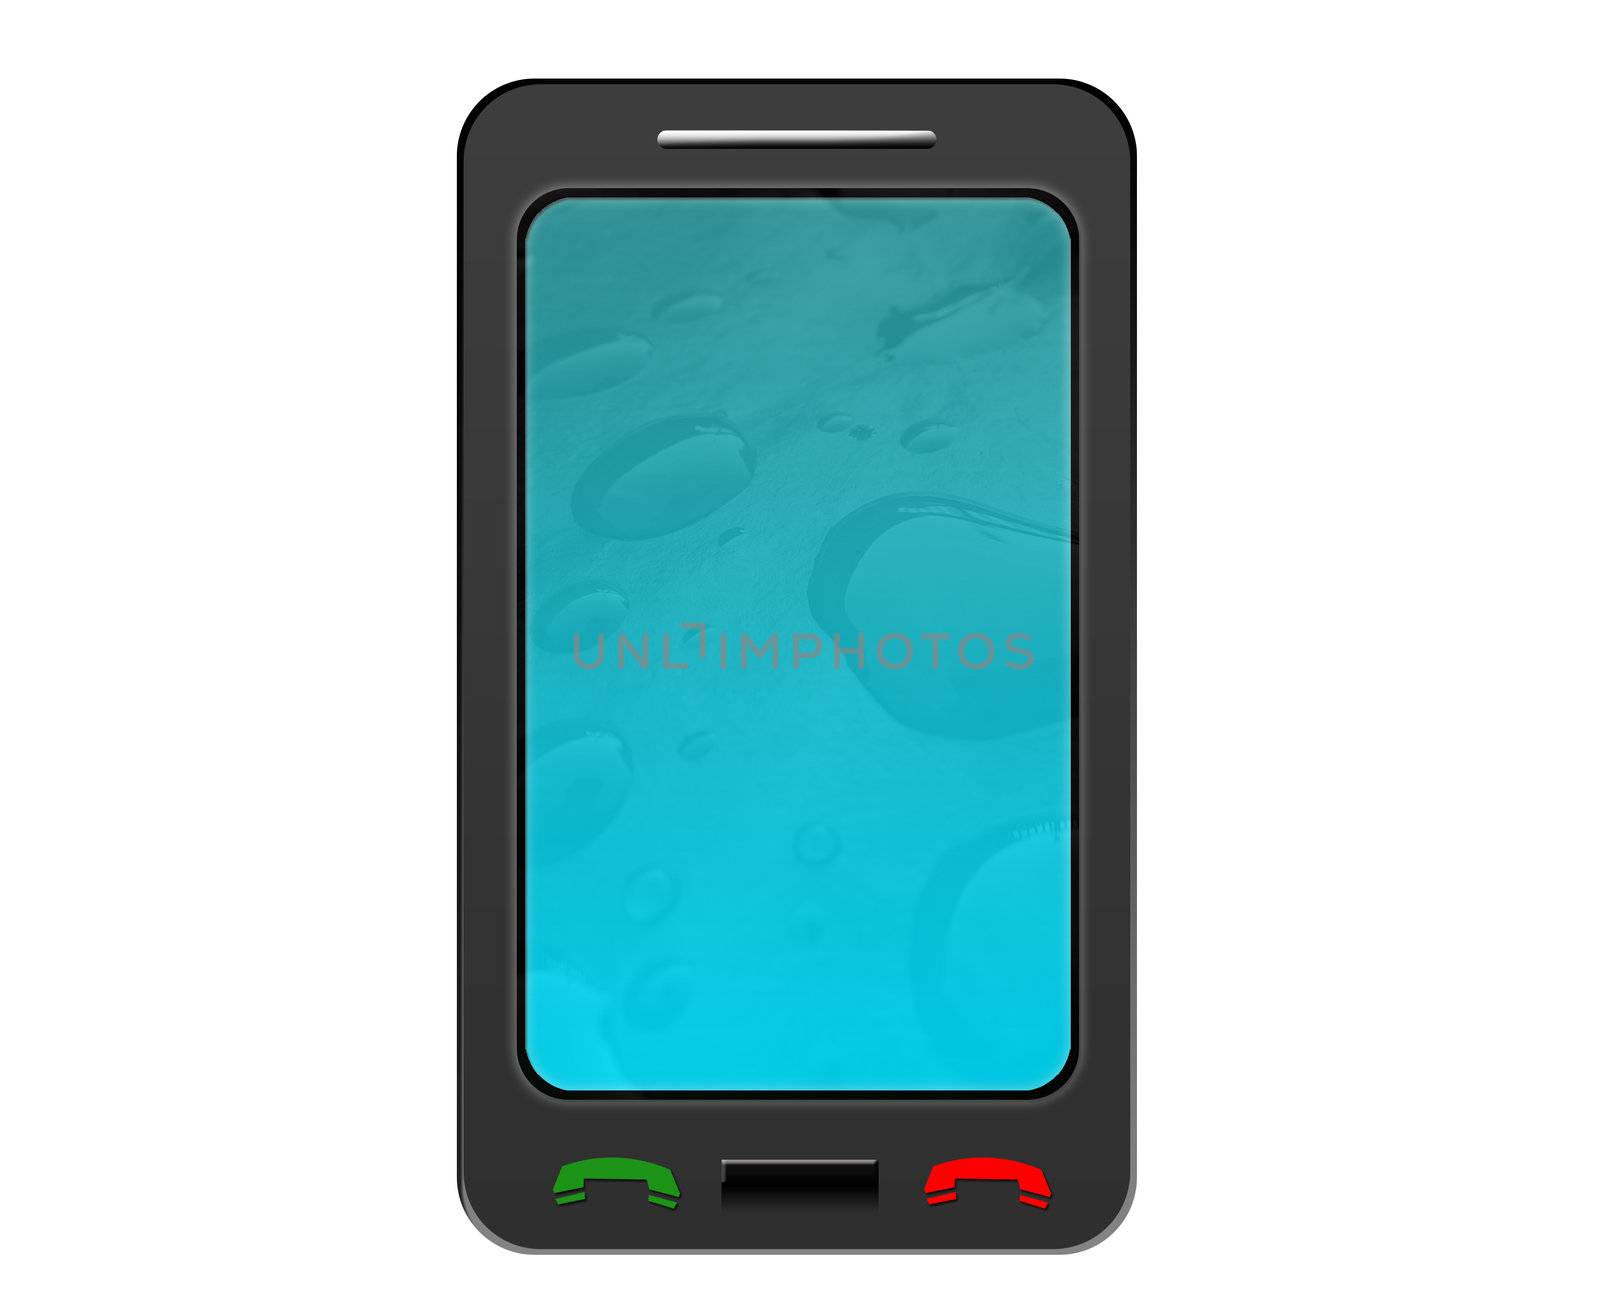 Touchscreen phone by shawlinmohd